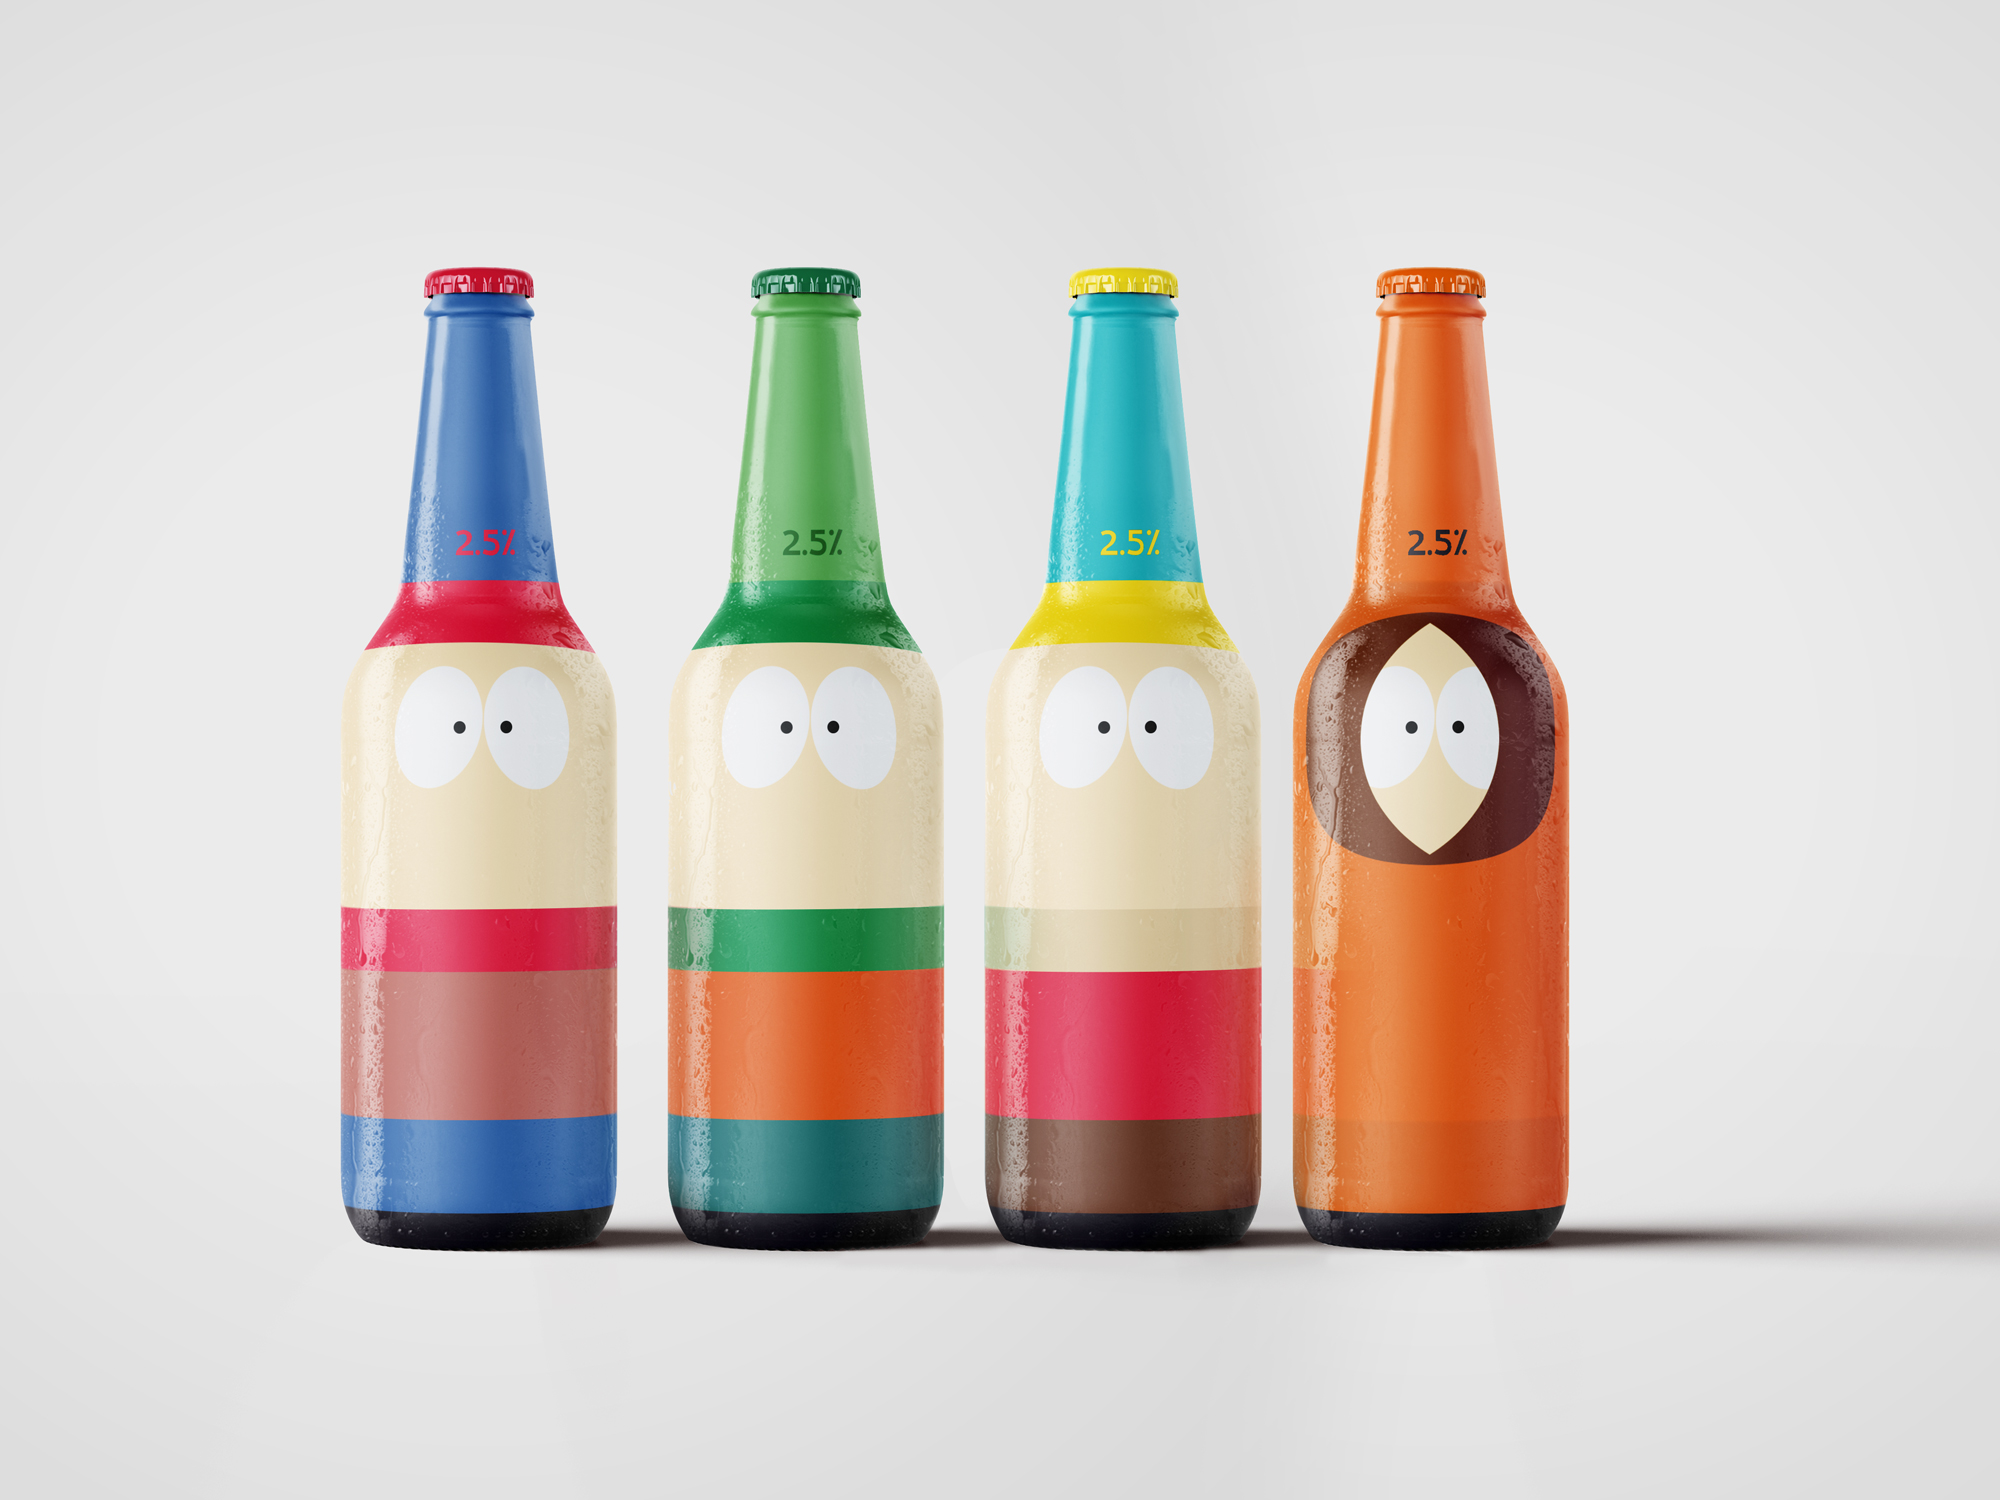 South Park bottle label design by Johan Wibrink